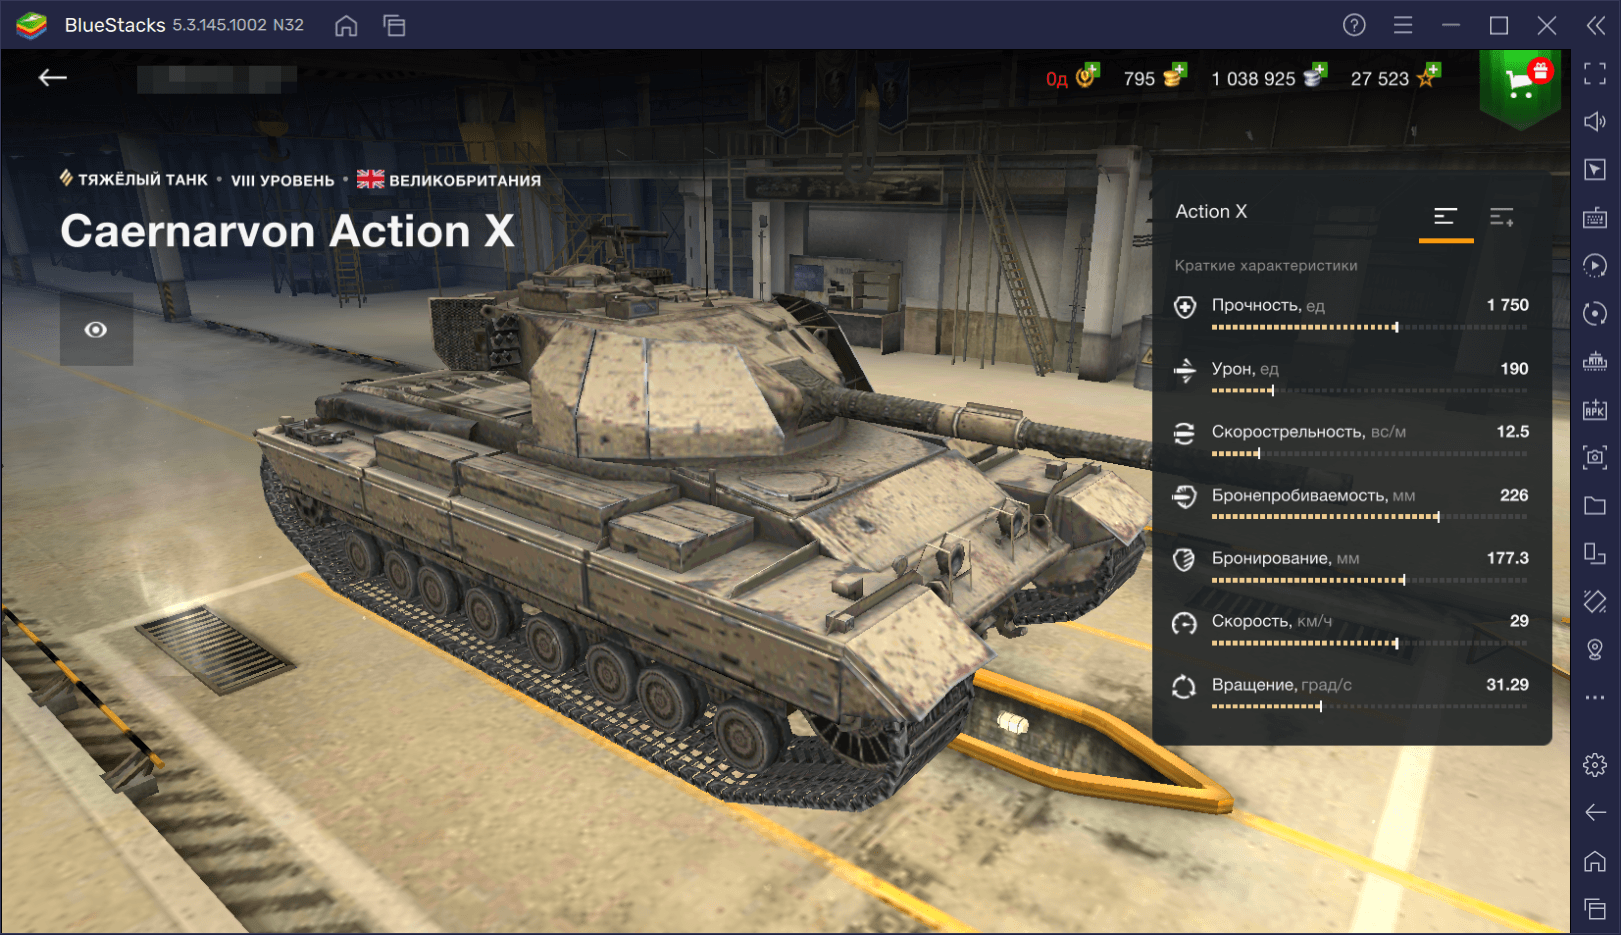 Гайд по премиумному танку Caernarvon Action X в World of Tanks Blitz. Обзор характеристик, достоинств и тактик игры